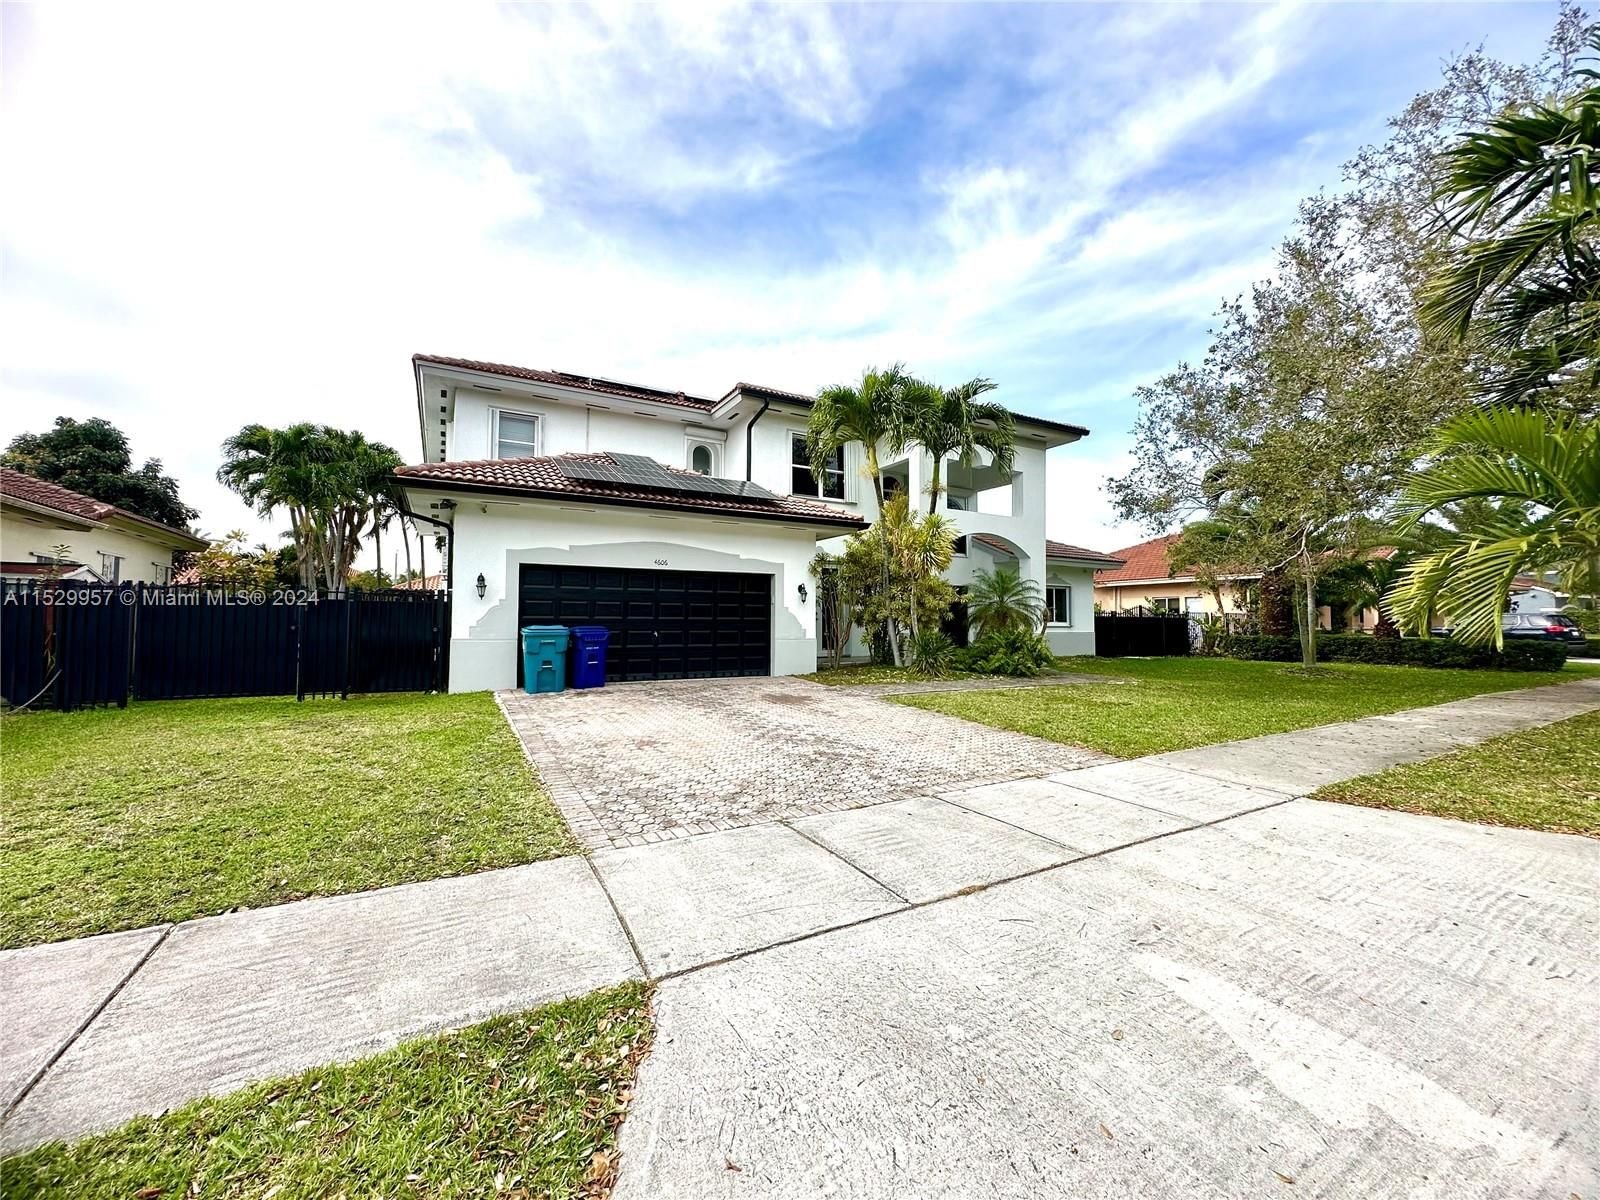 Real estate property located at 4606 159th Ct, Miami-Dade County, BARIMA ESTATES, Miami, FL